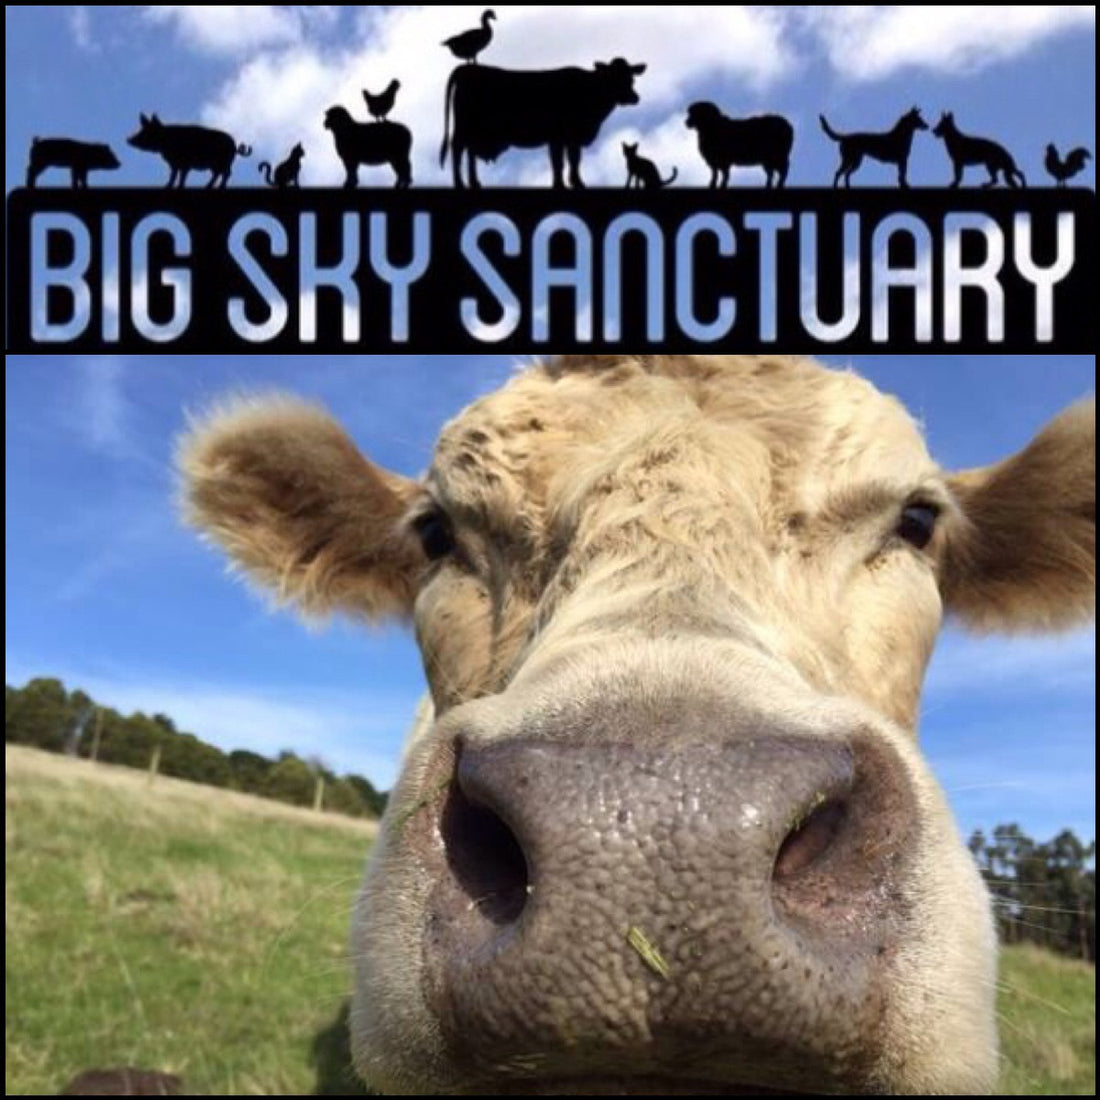 Let's help Big Sky Sanctuary!